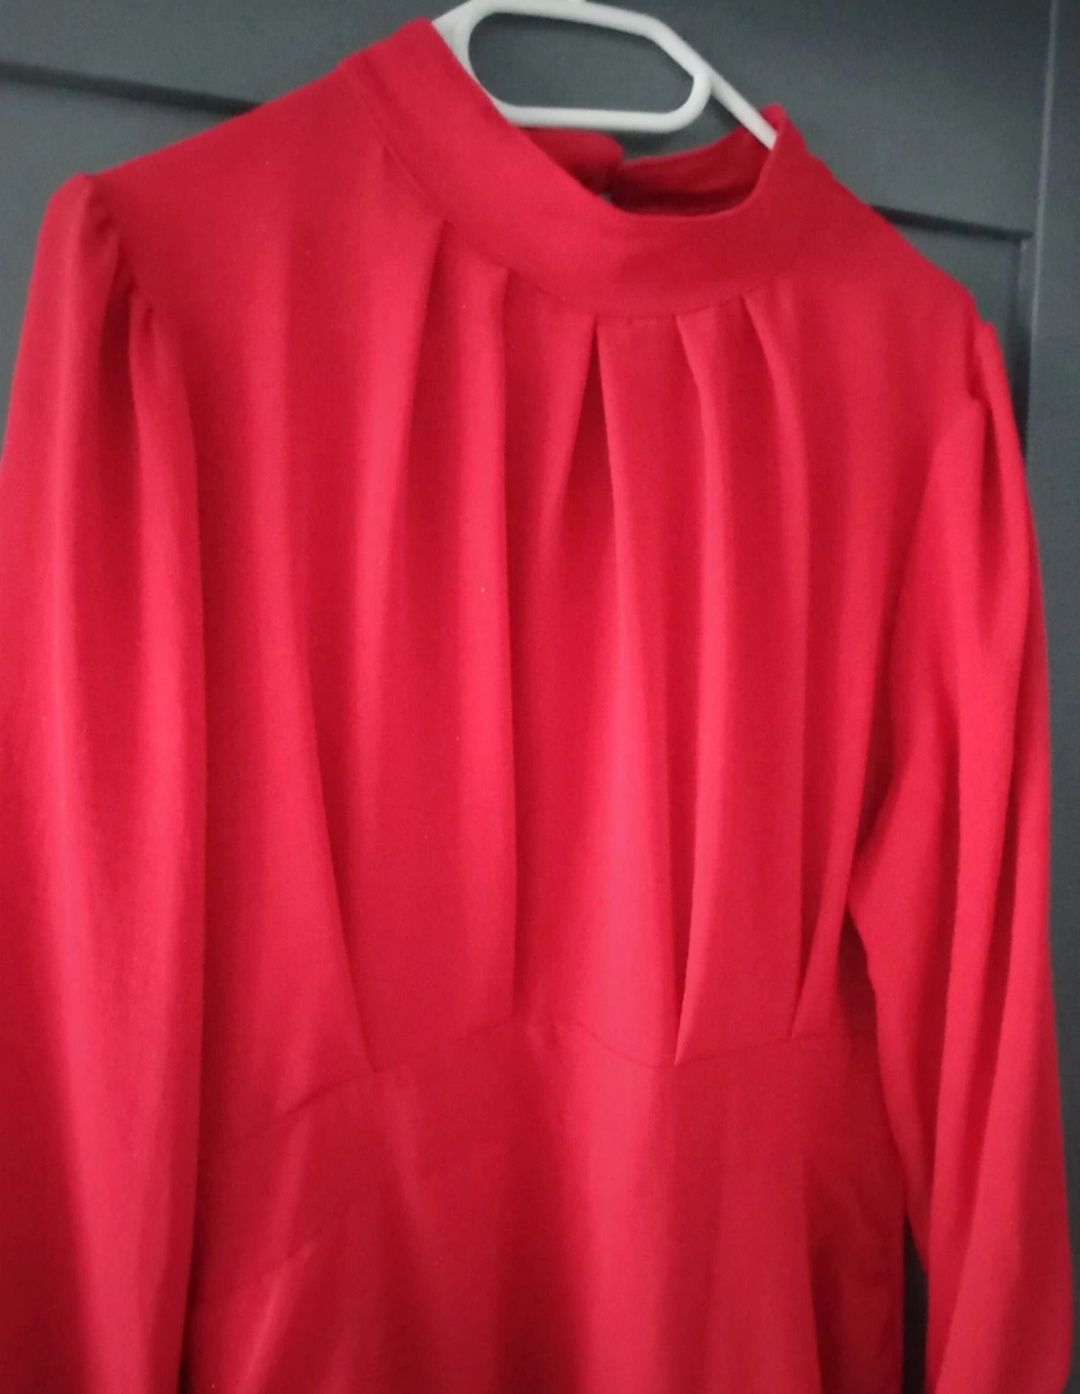 Czerwona sukienka rozmiar 38/40 Made in Italy